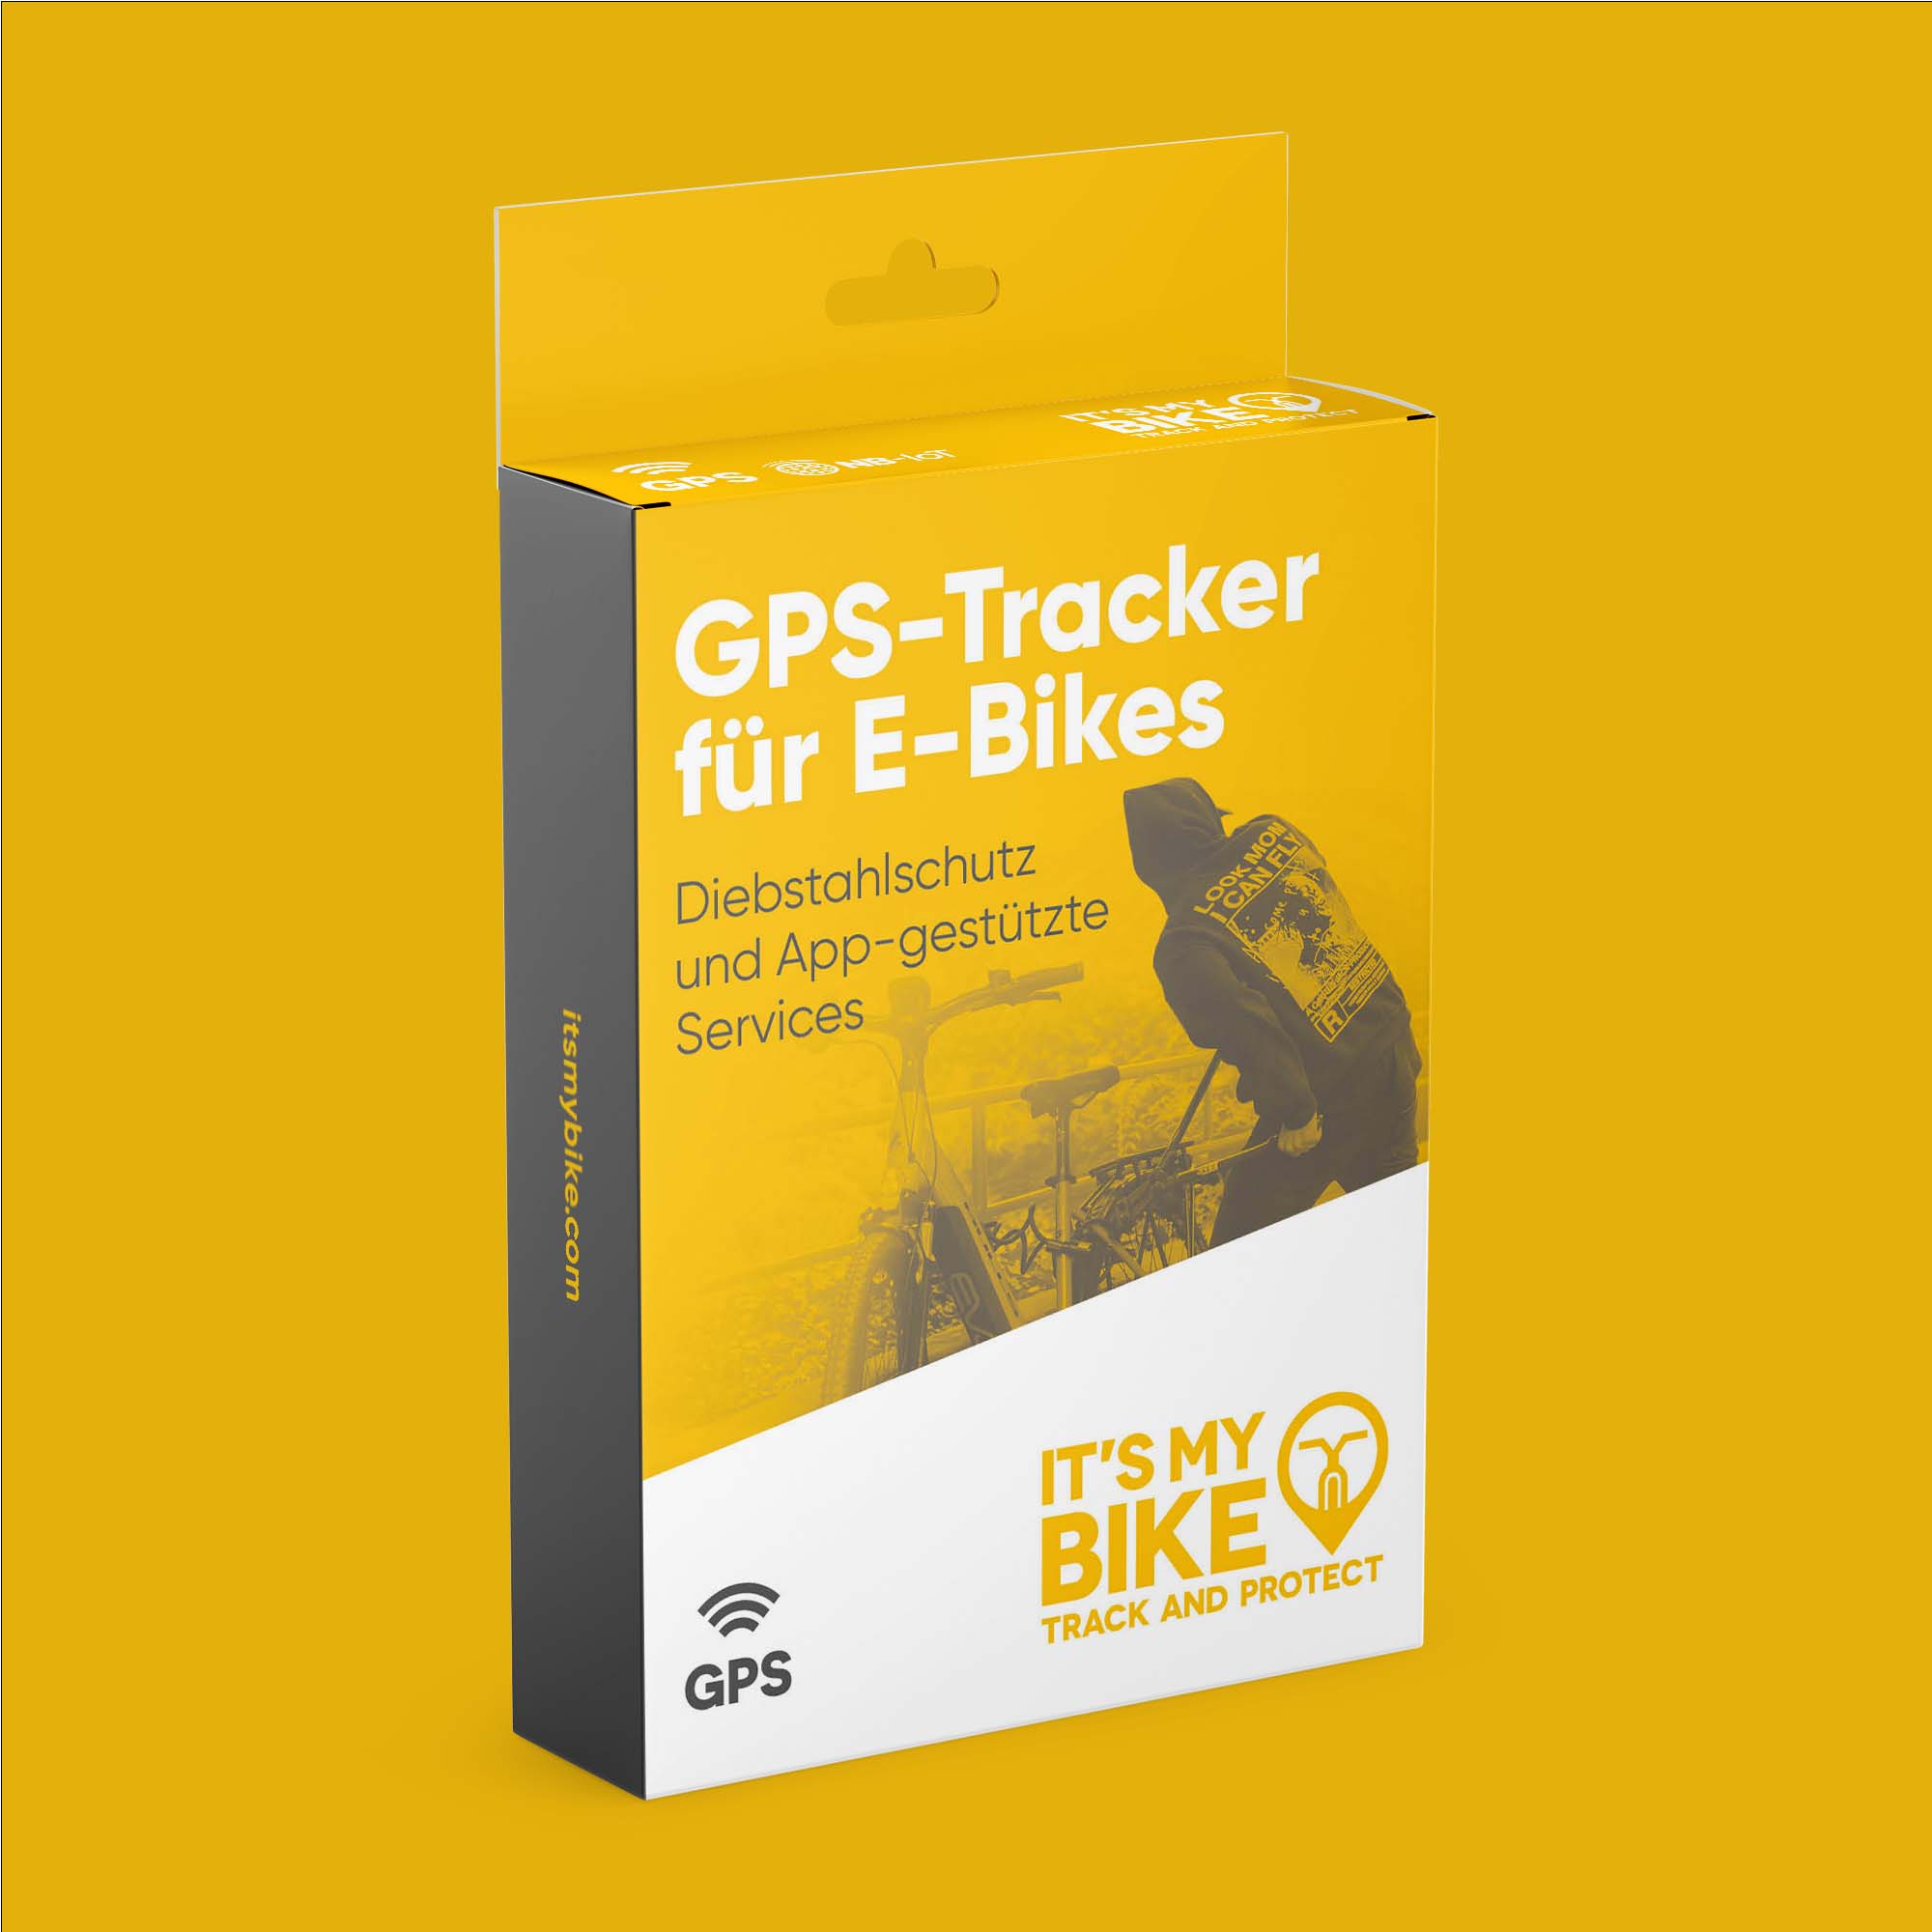 Gelbe Verpackung eines GPS-Trackers von IT'S MY BIKE